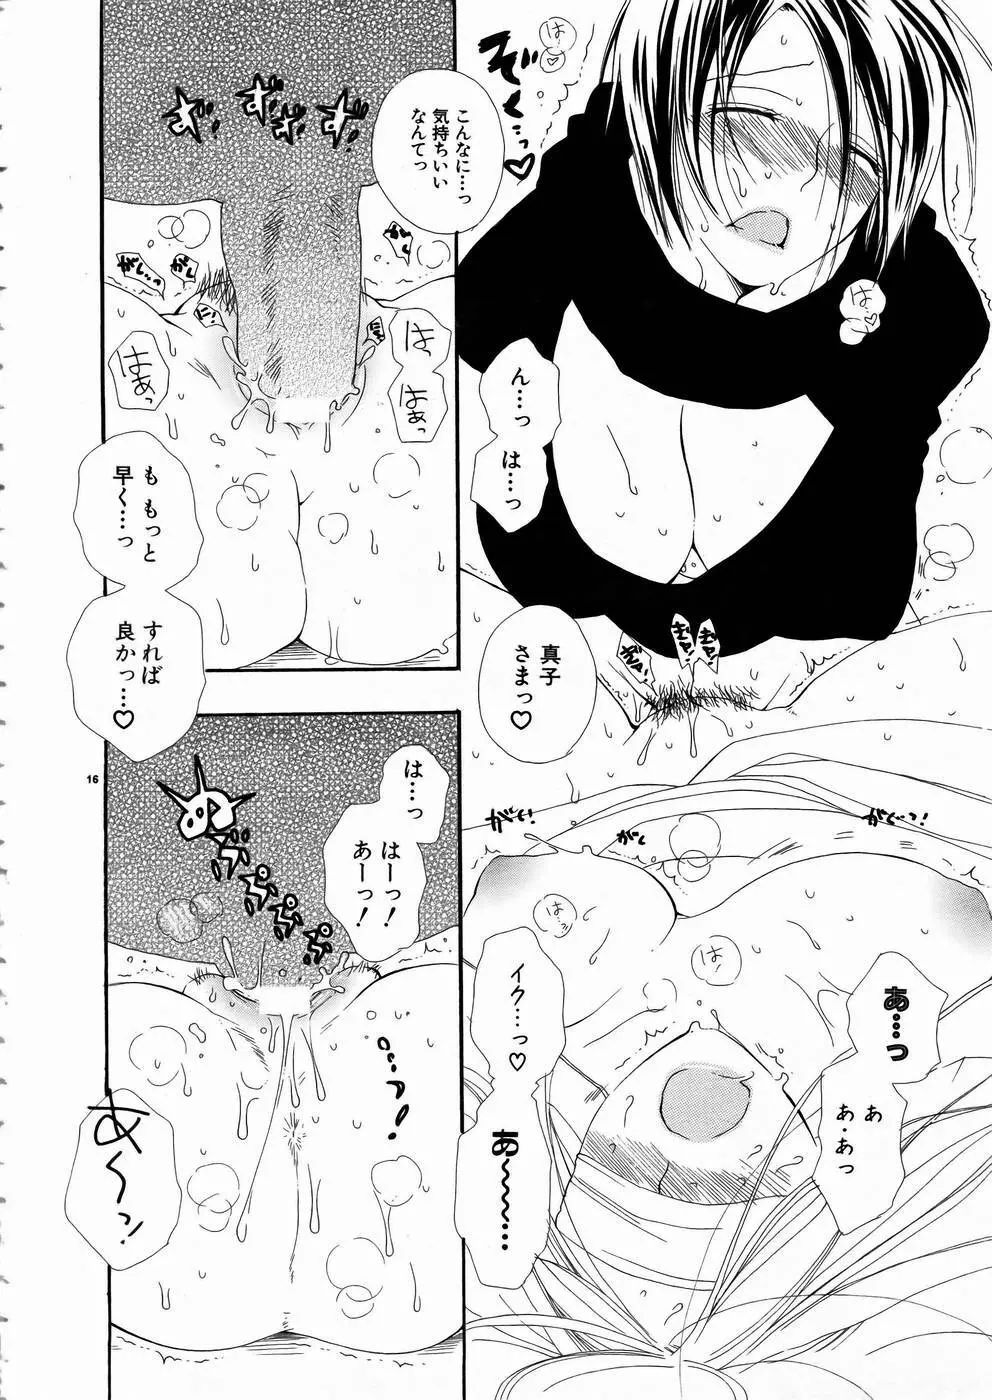 少女剣客凌辱コミック Vol.01 くノ一斬! 15ページ